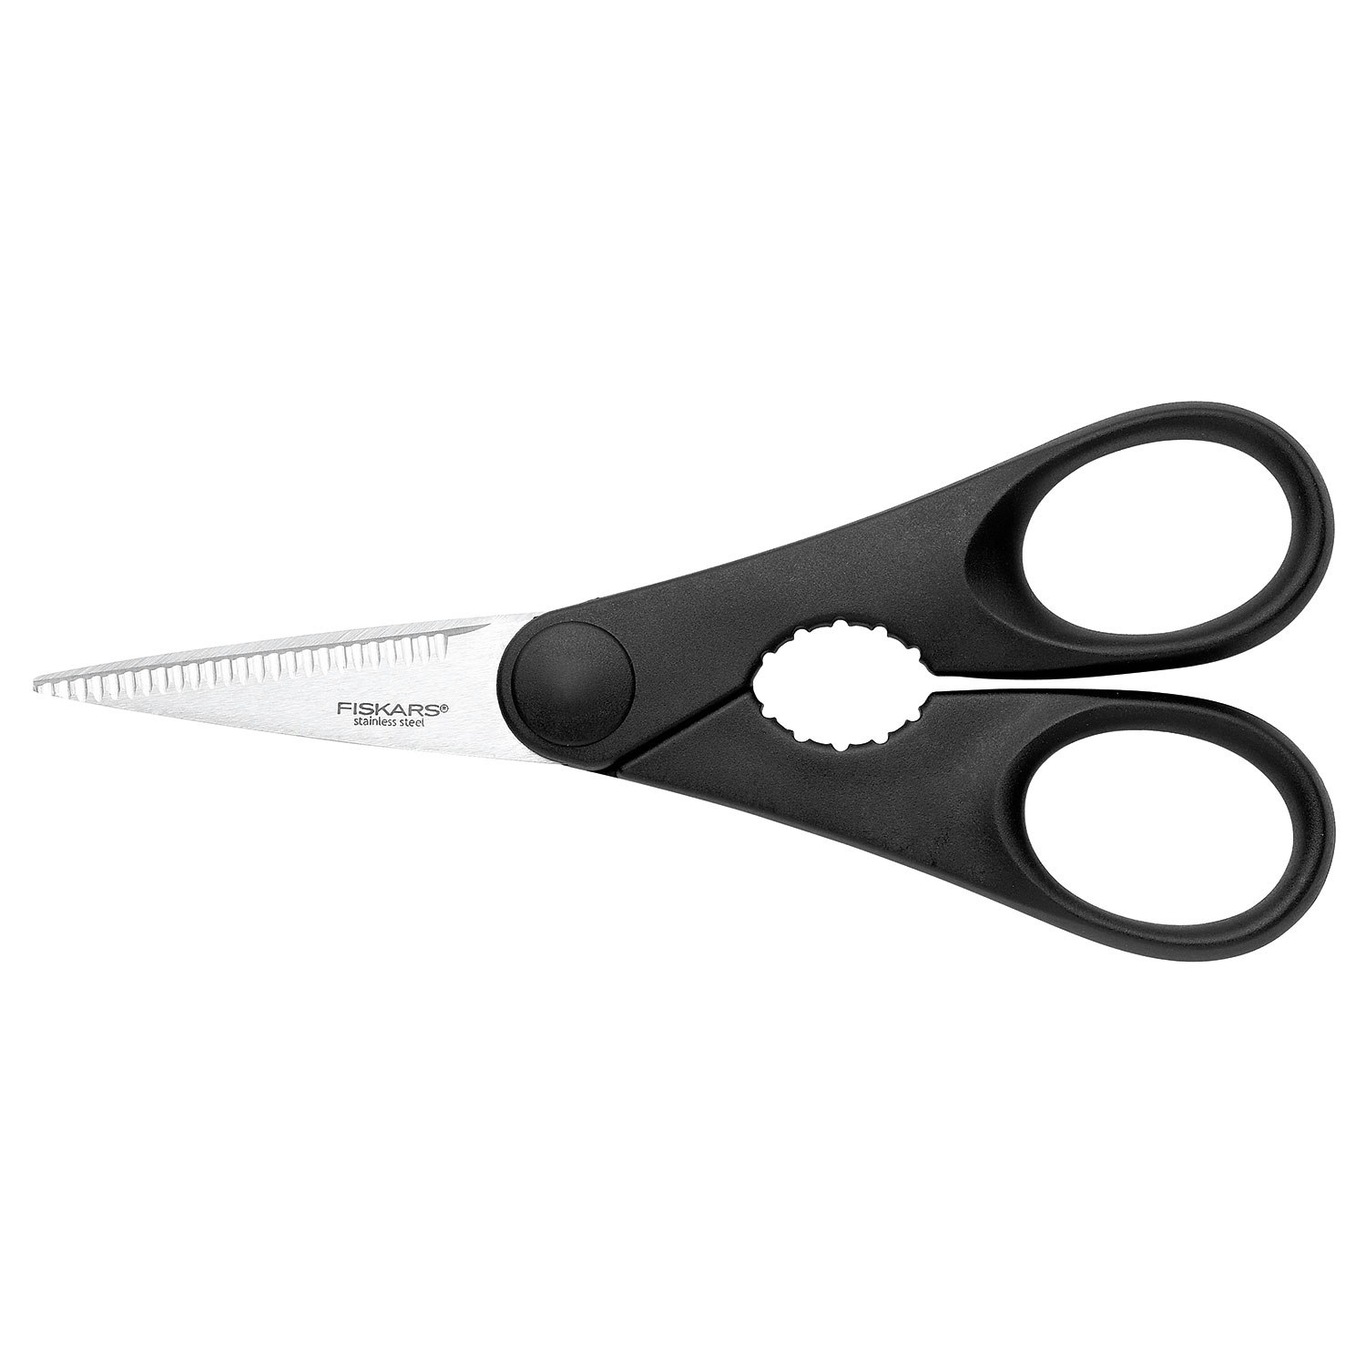 All Steel Chef Knife, 13,5 cm - Fiskars @ RoyalDesign